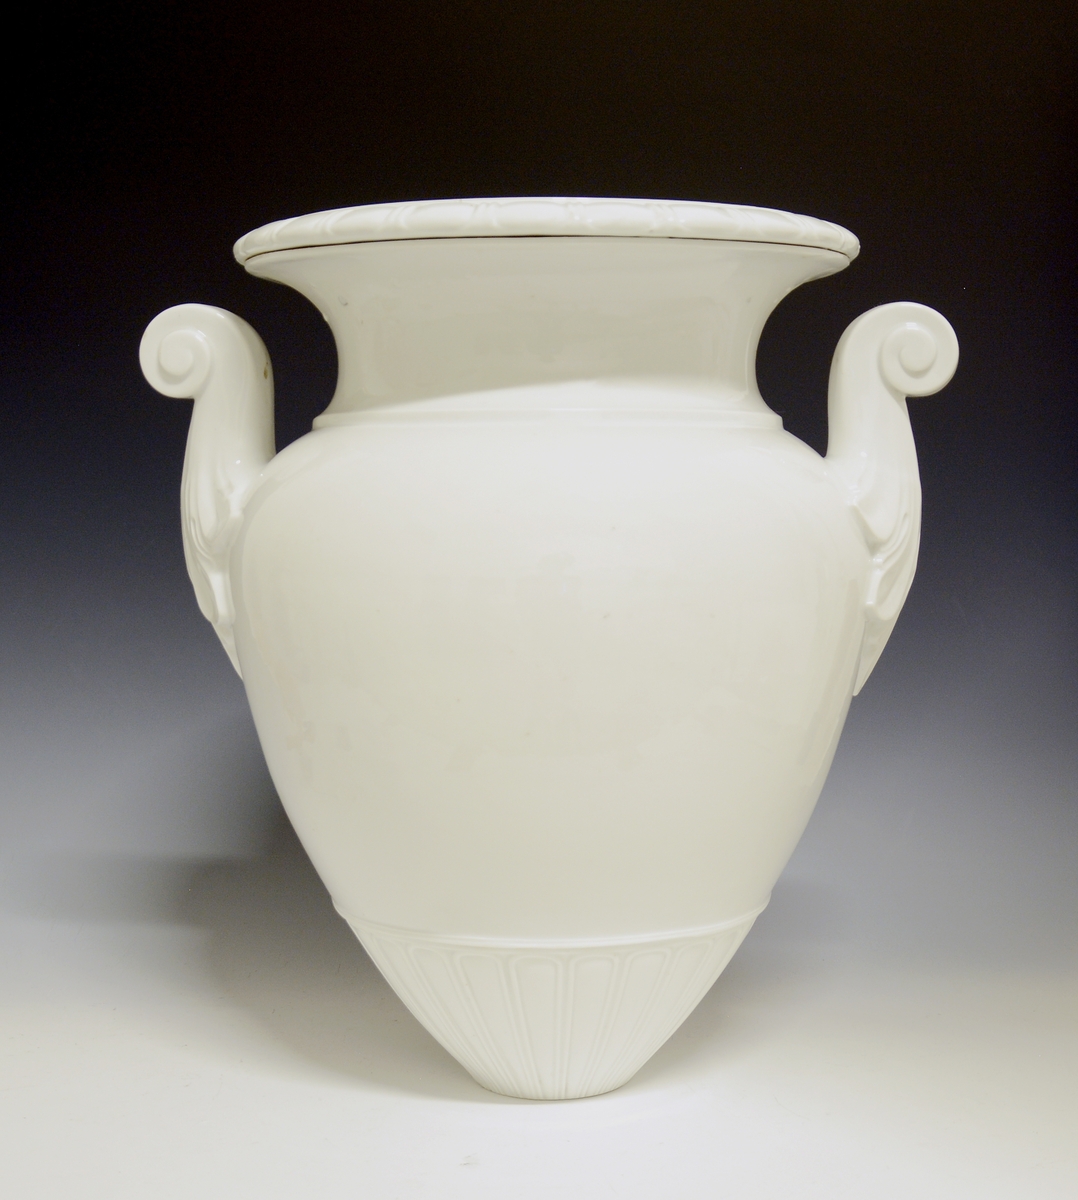 Prot: Stor vase av porselen. Ellers samme som TGM-BM.1967-390, men med hvit glasur, uten dekor.